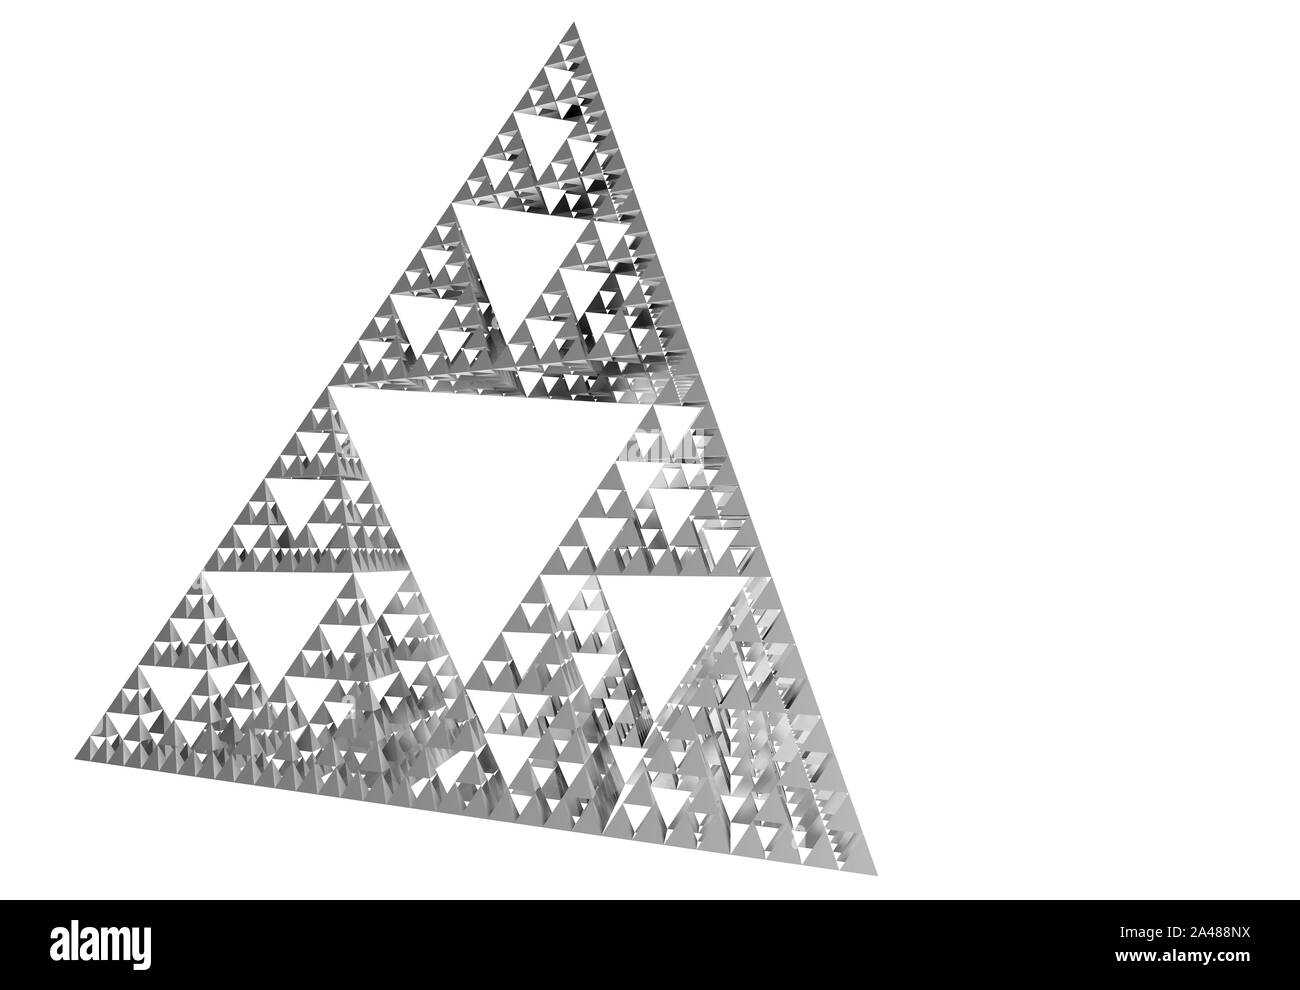 Grau Sierpinski-dreieck auf weißem Hintergrund. Es ist eine Fraktale mit der allgemeinen Form eines gleichseitigen Dreiecks, unterteilt rekursiv in kleineren e Stockfoto